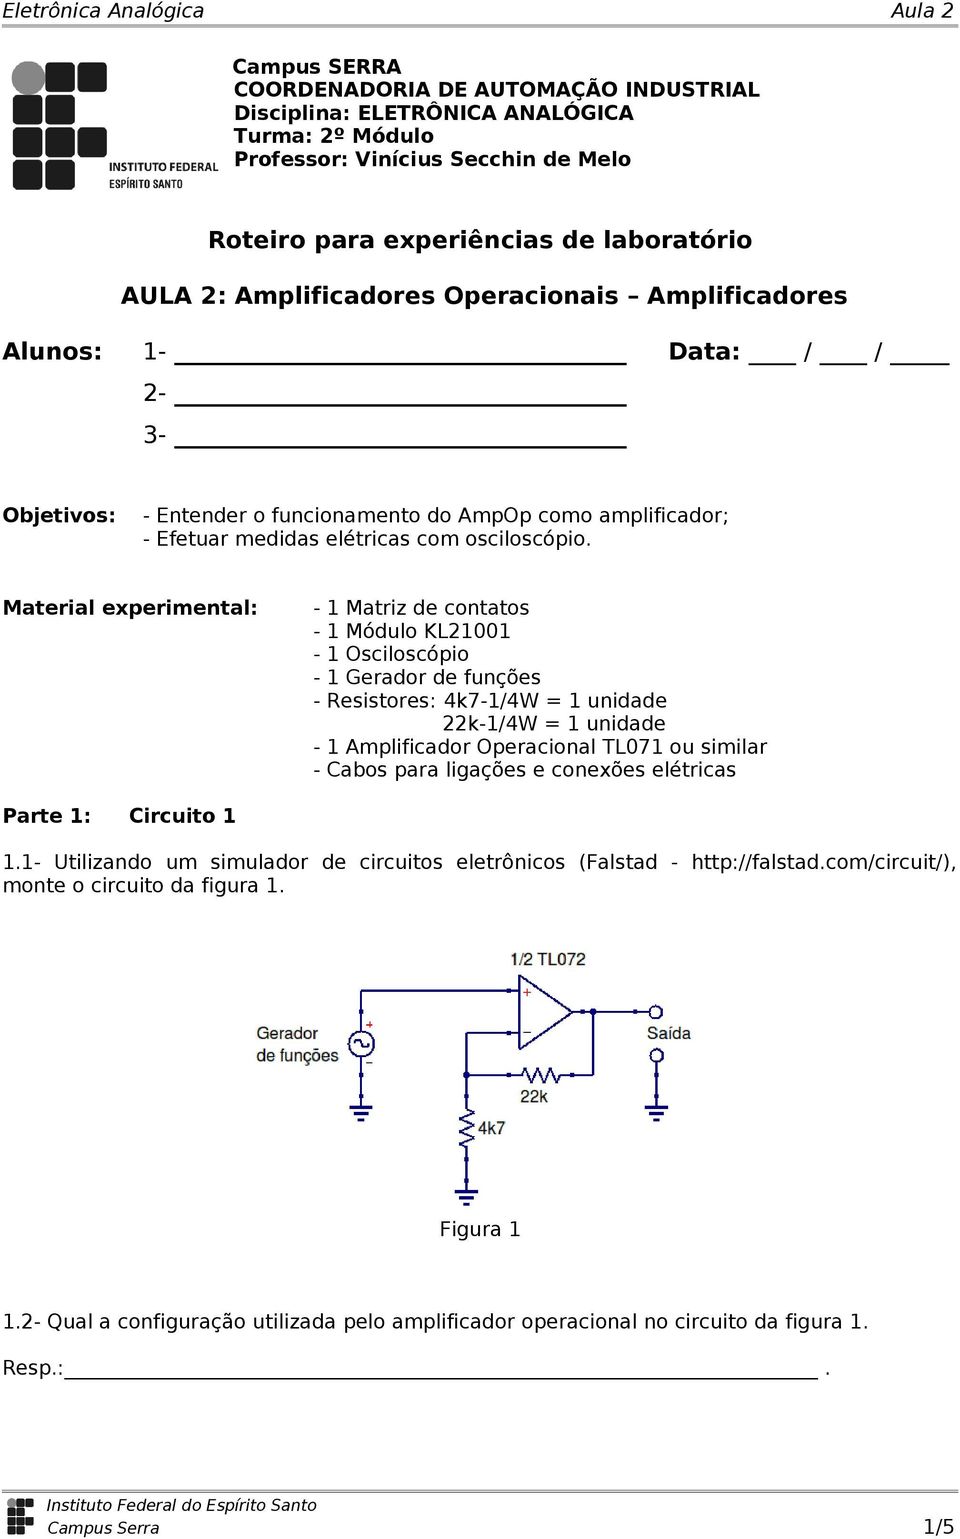 Material experimental: - 1 Matriz de contatos - 1 Módulo KL21001-1 - 1 Gerador de funções - Resistores: 4k7-1/4W = 1 unidade 22k-1/4W = 1 unidade - 1 Amplificador Operacional TL071 ou similar - Cabos